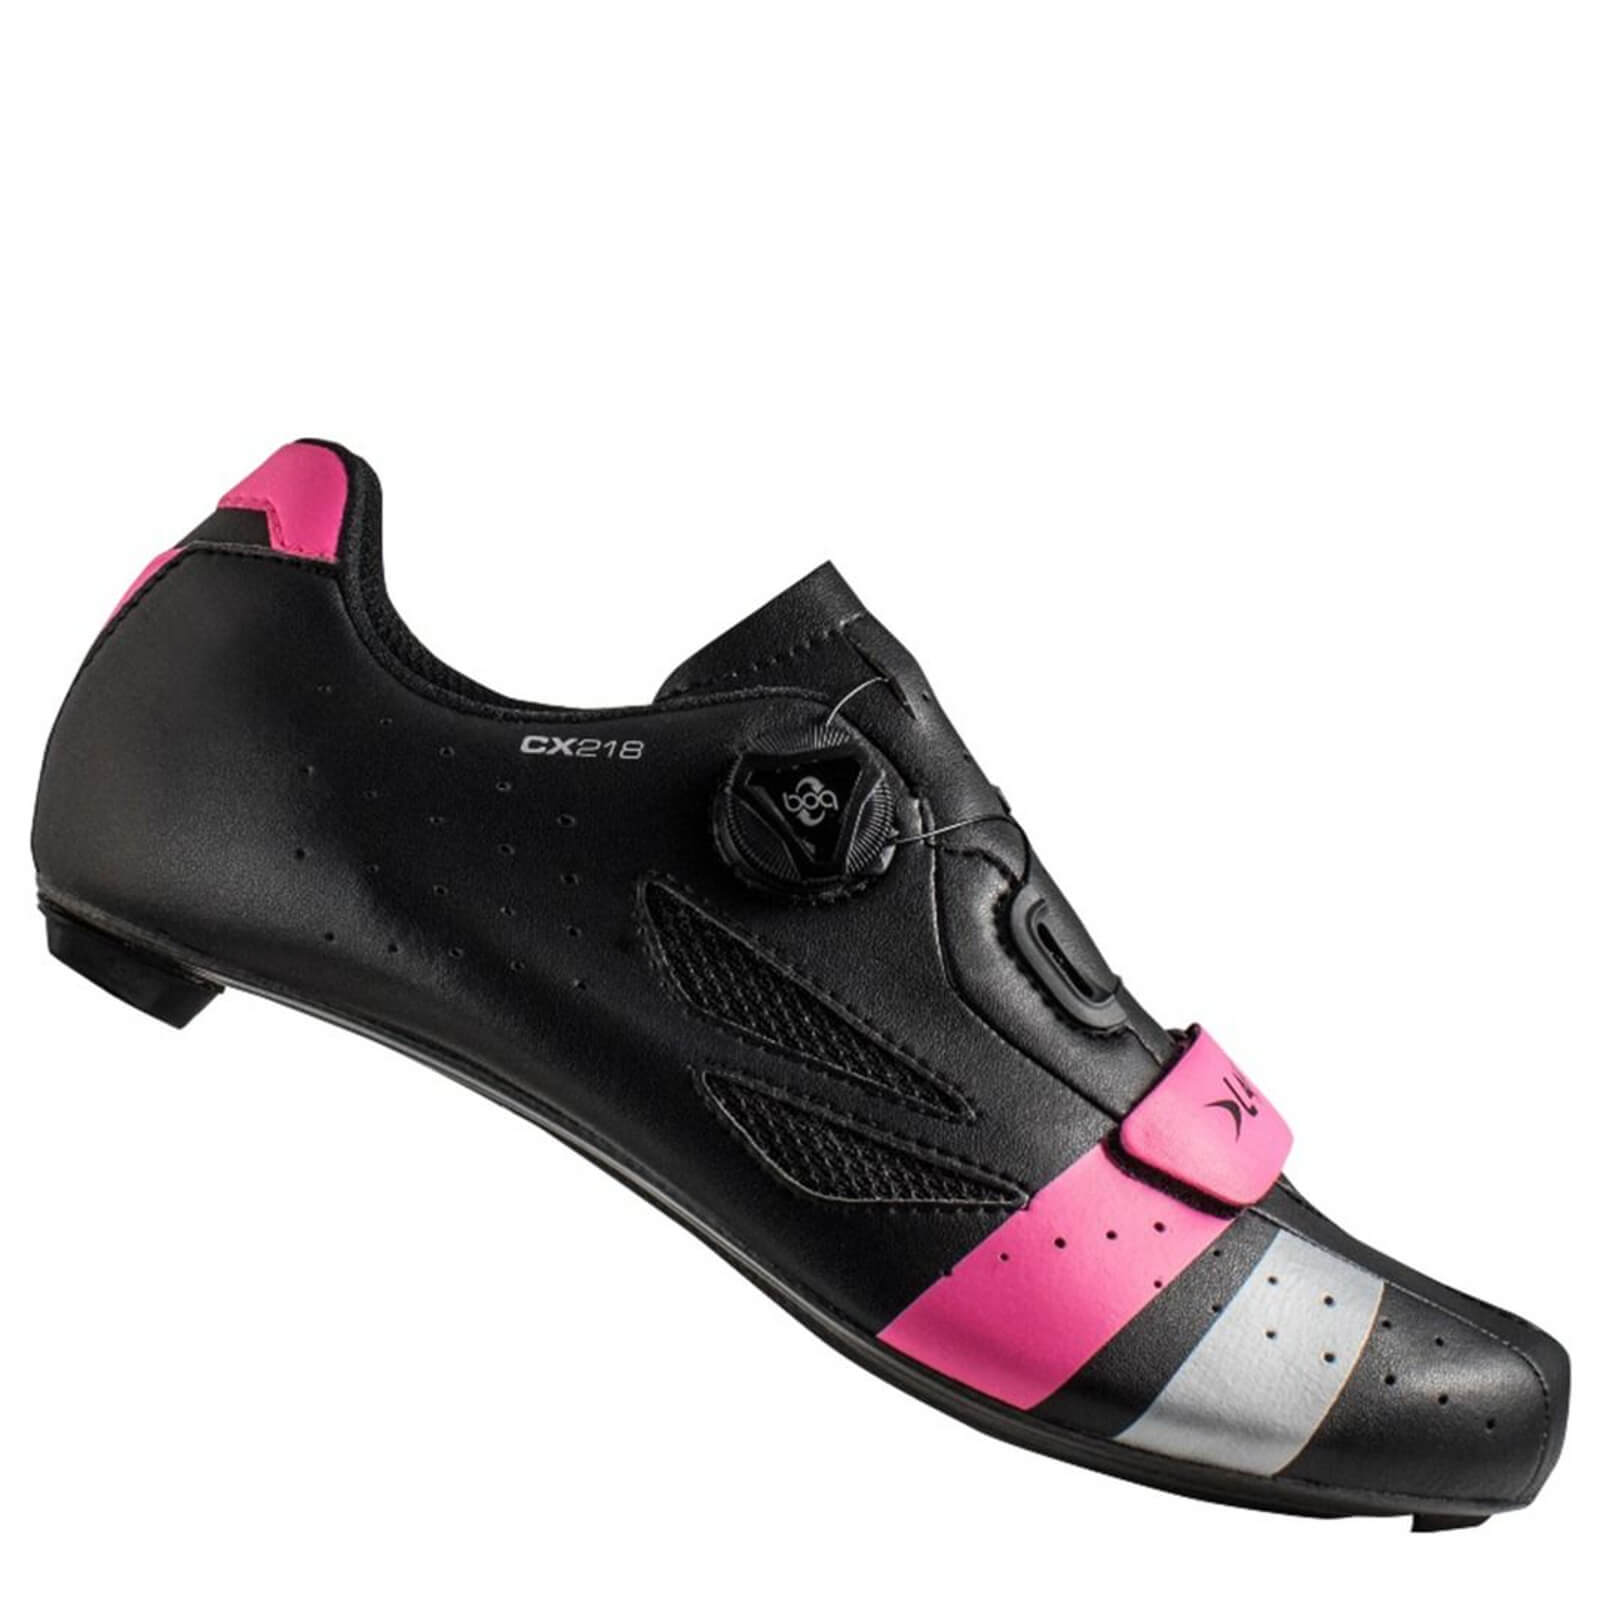 Lake CX218 Carbon Wide Fit Road Shoes 